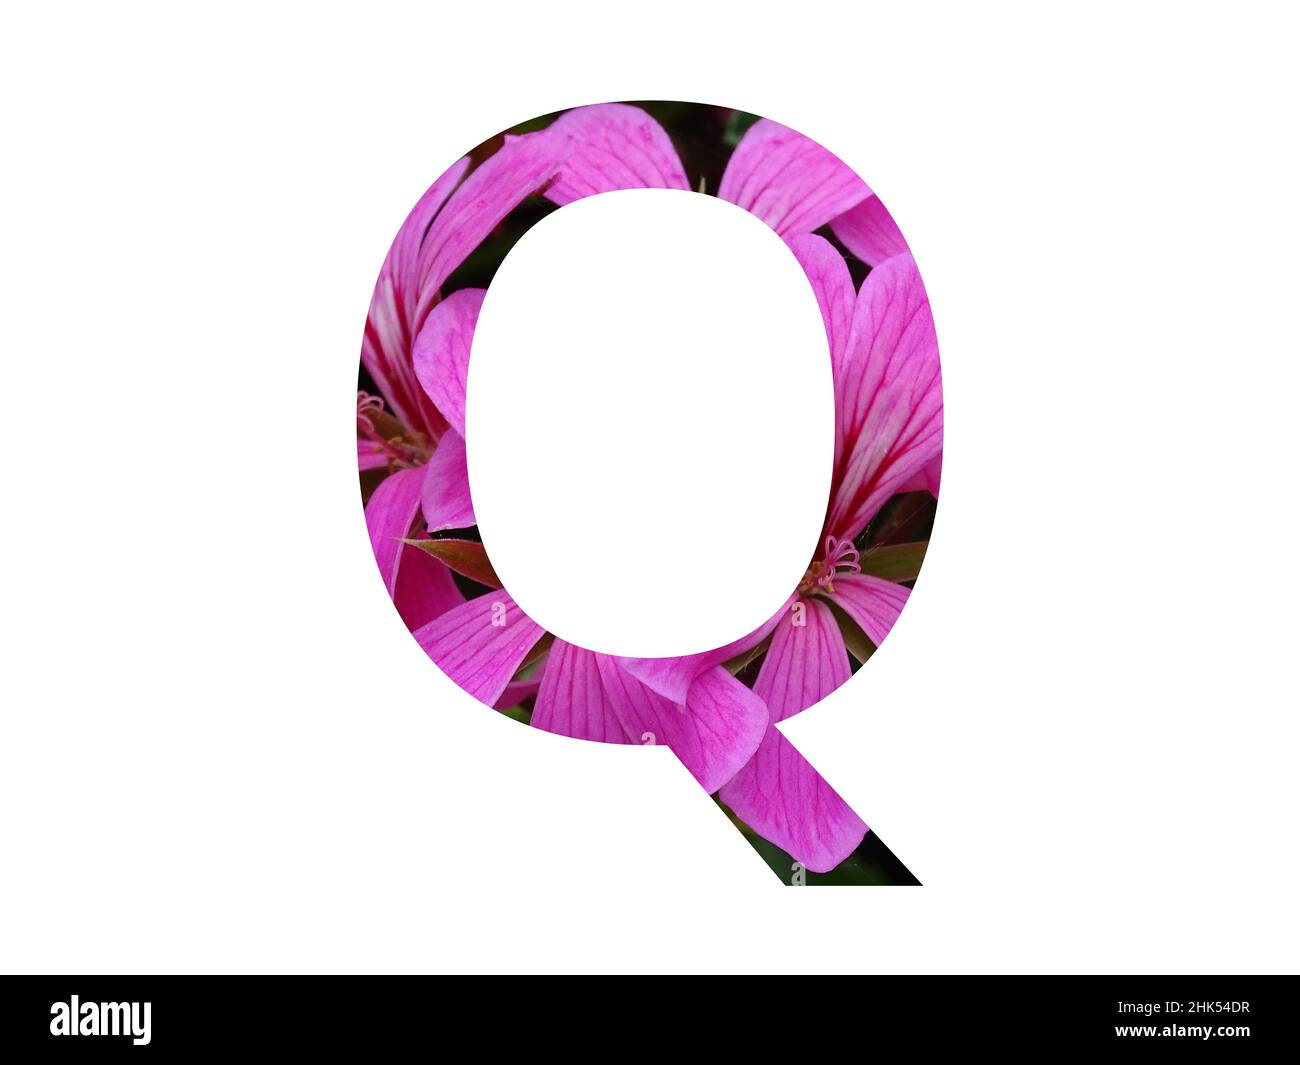 Lettera Q dell'alfabeto fatto con un fiore rosa di pelargonio, isolato su sfondo bianco Foto Stock